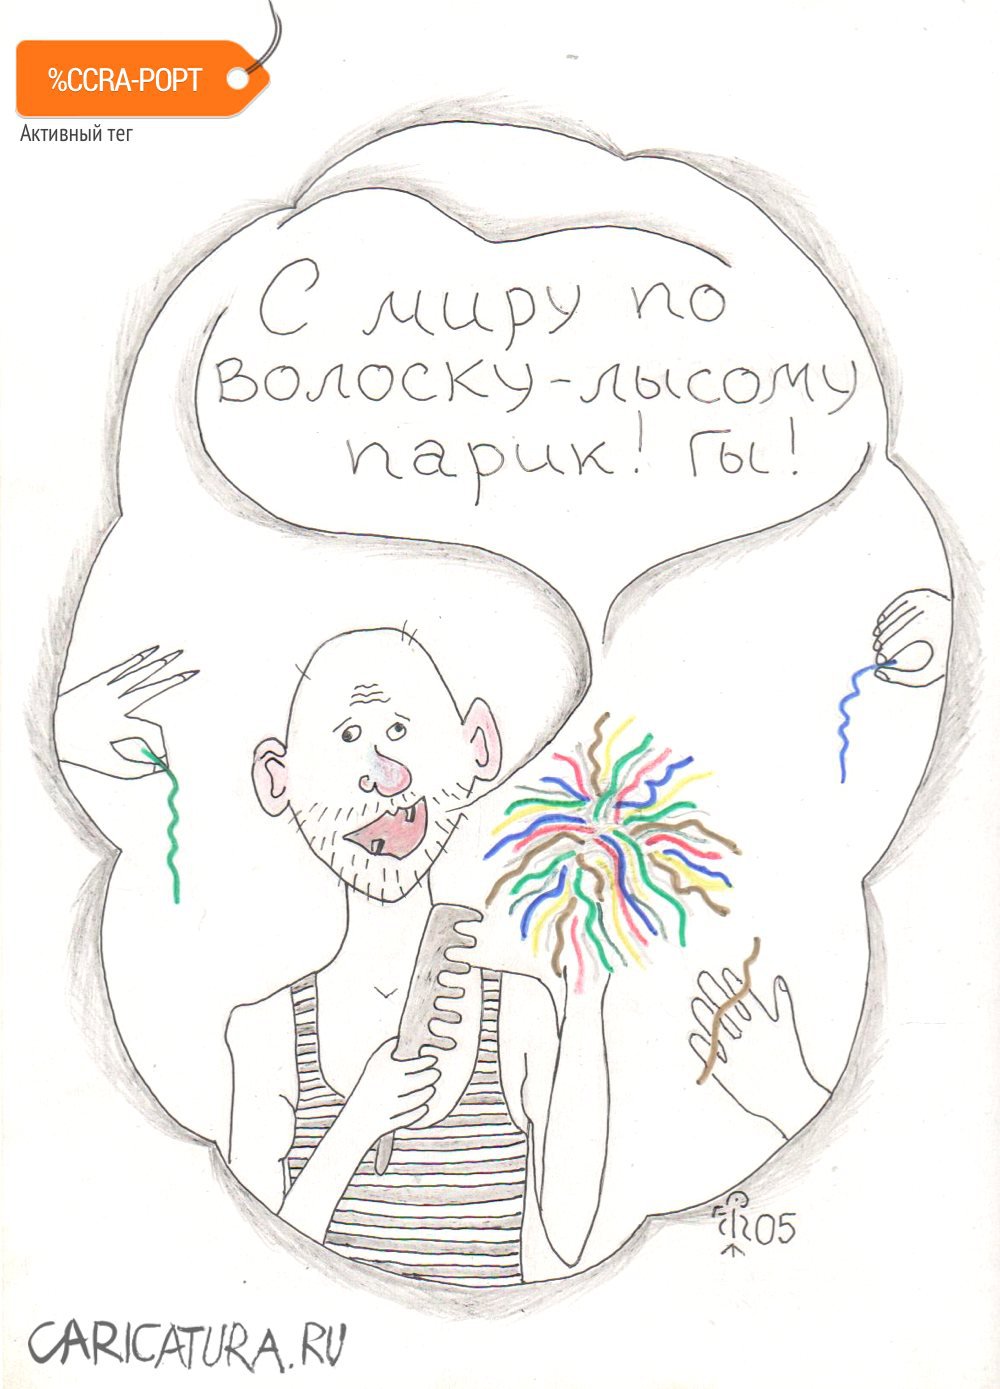 Карикатура "Лысый", Вяч Минаев